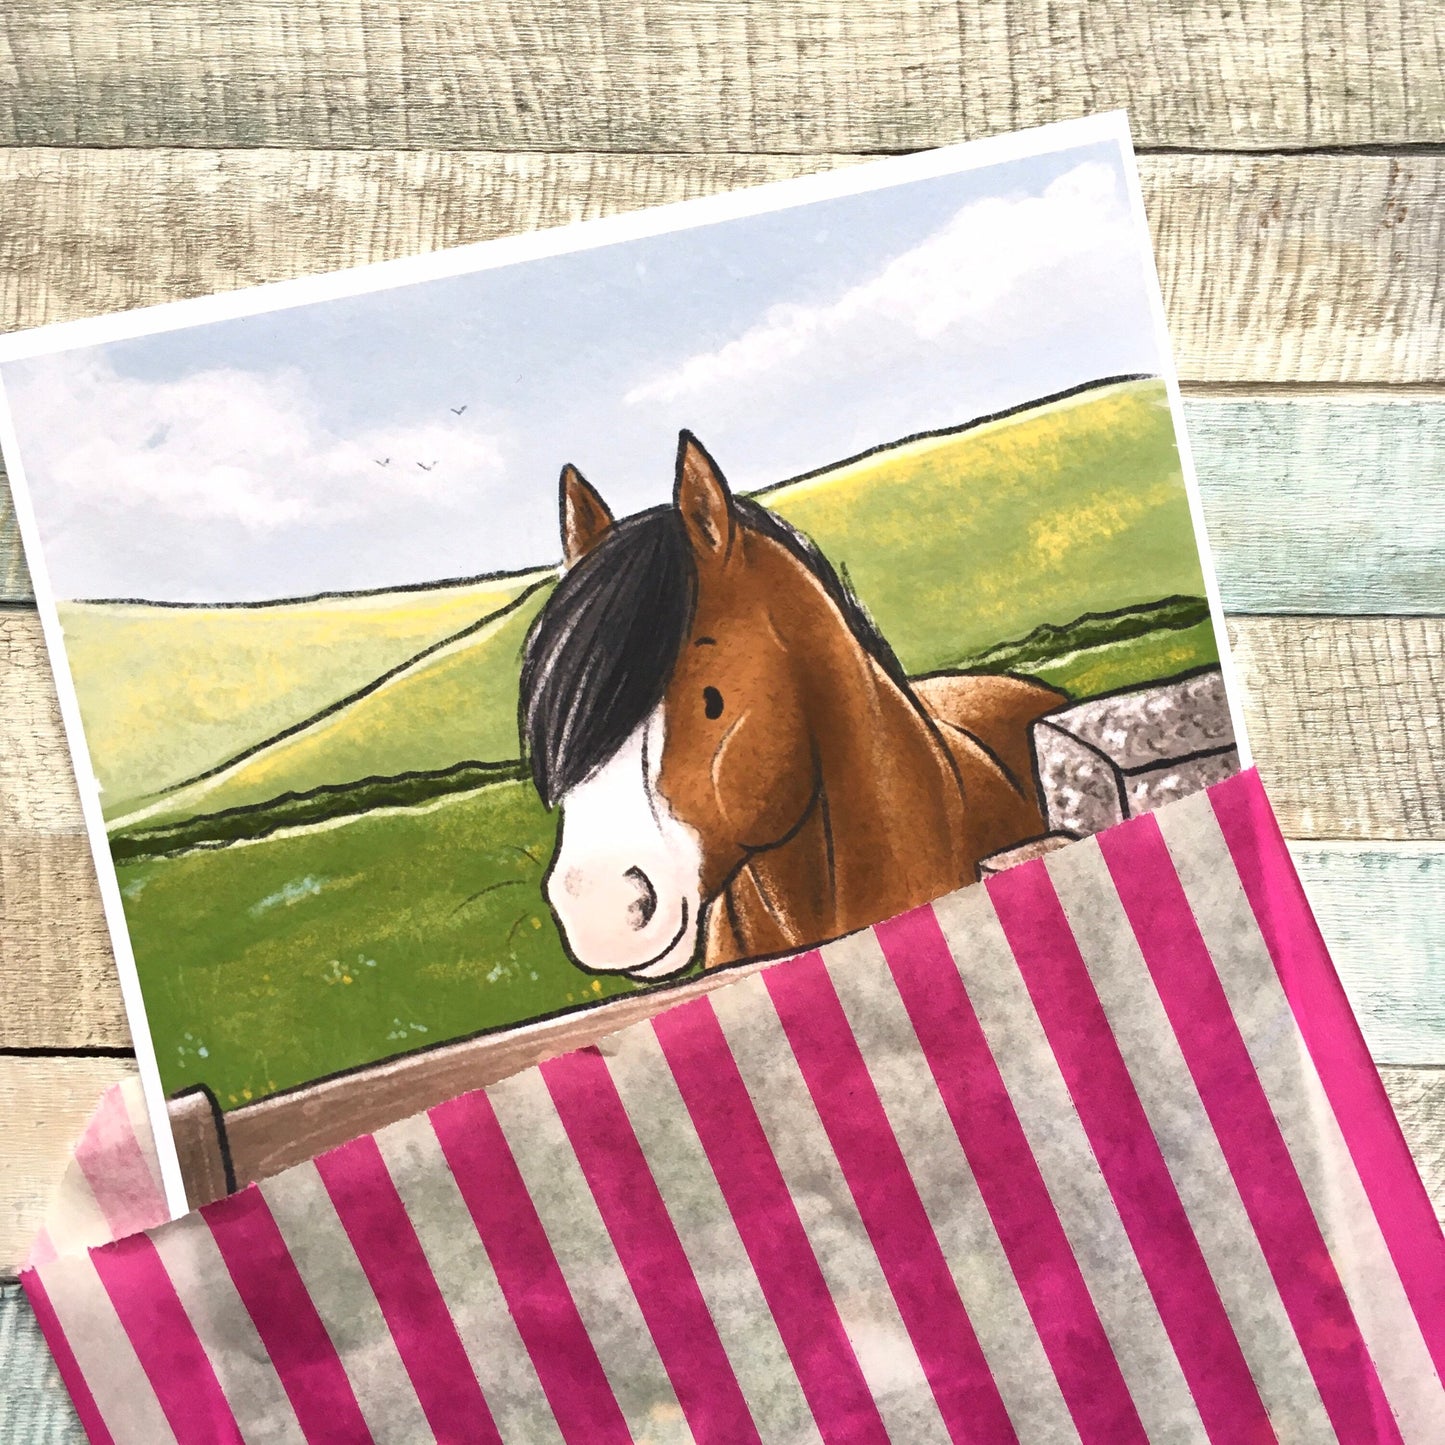 Summer Dreams Fun Horse Art Print - A5 6x4 Sizes, Cute Horse Pony Wall Art